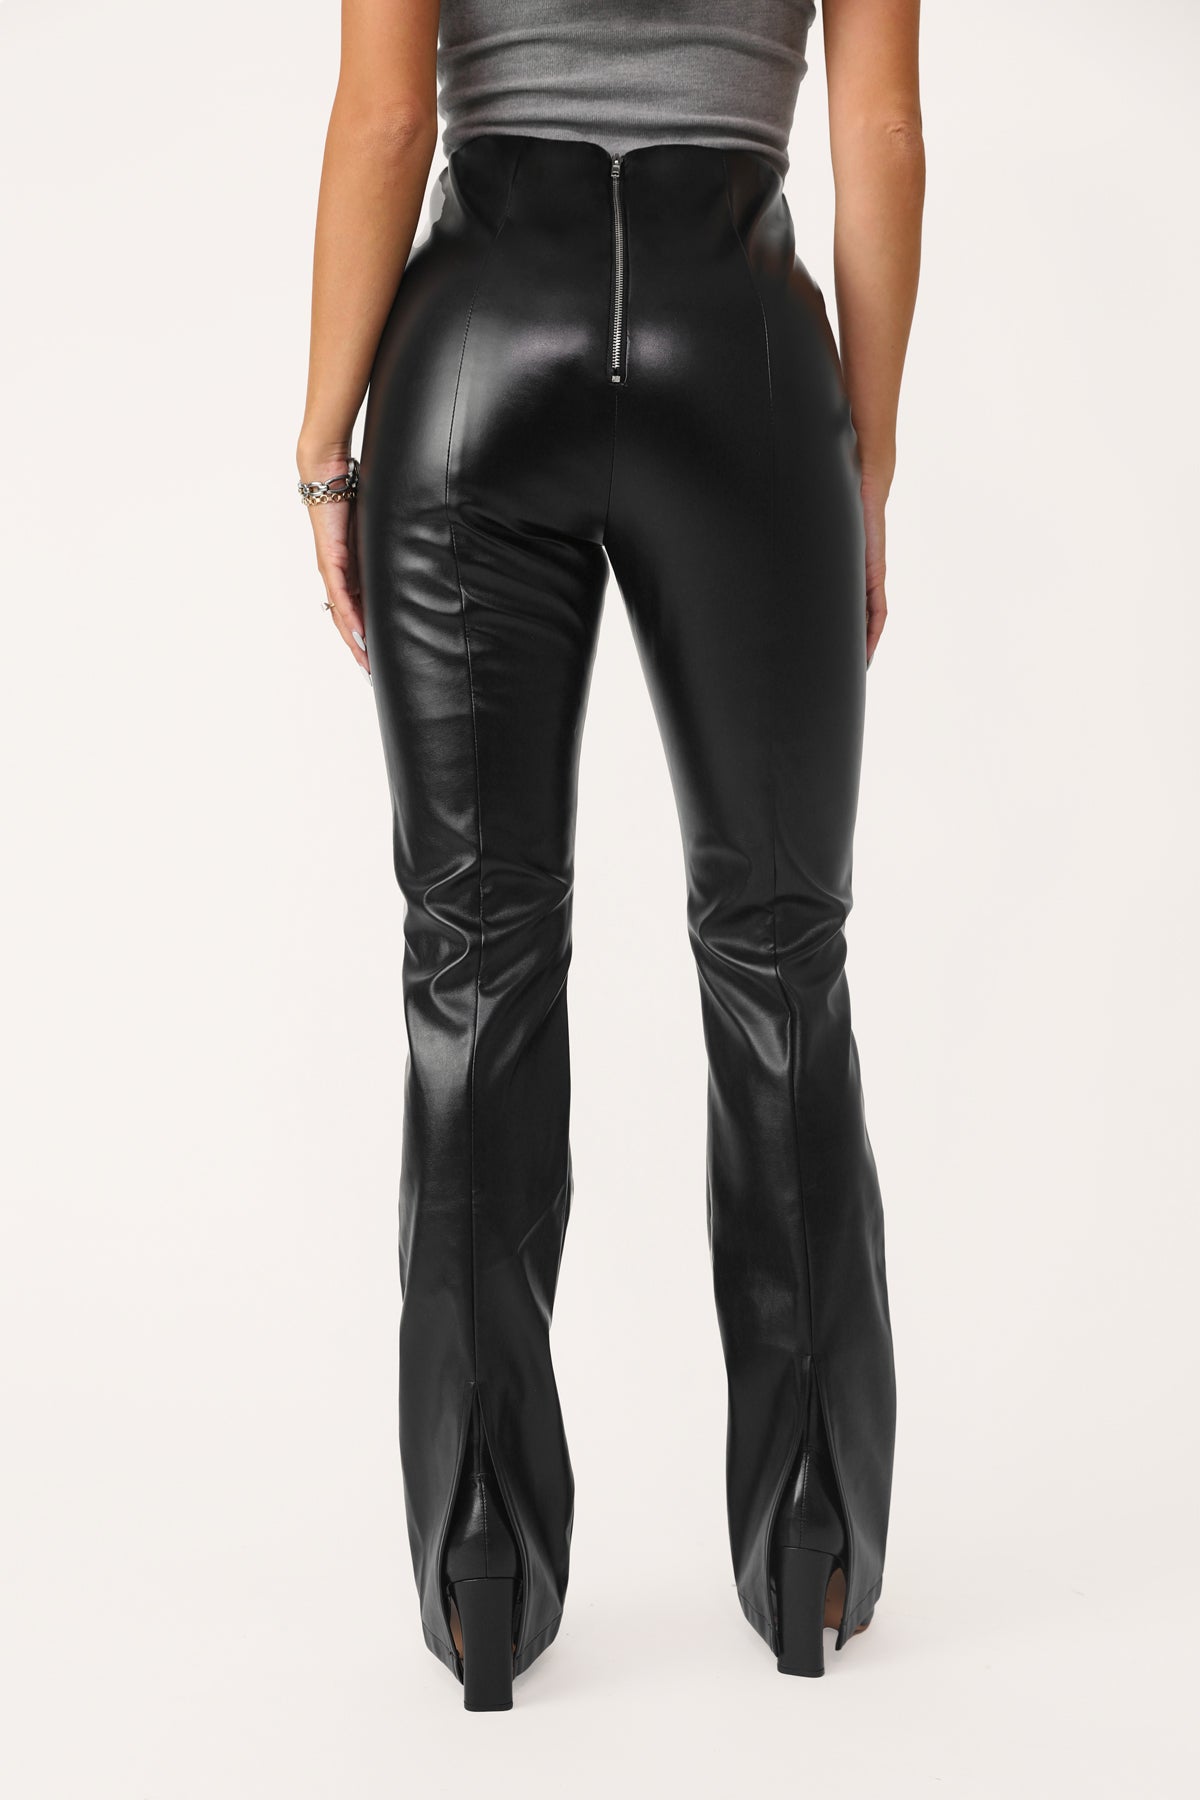 S M L Women's Premium Faux Leather Pants Flare Leg Stretch Mid-Rise Long  Black